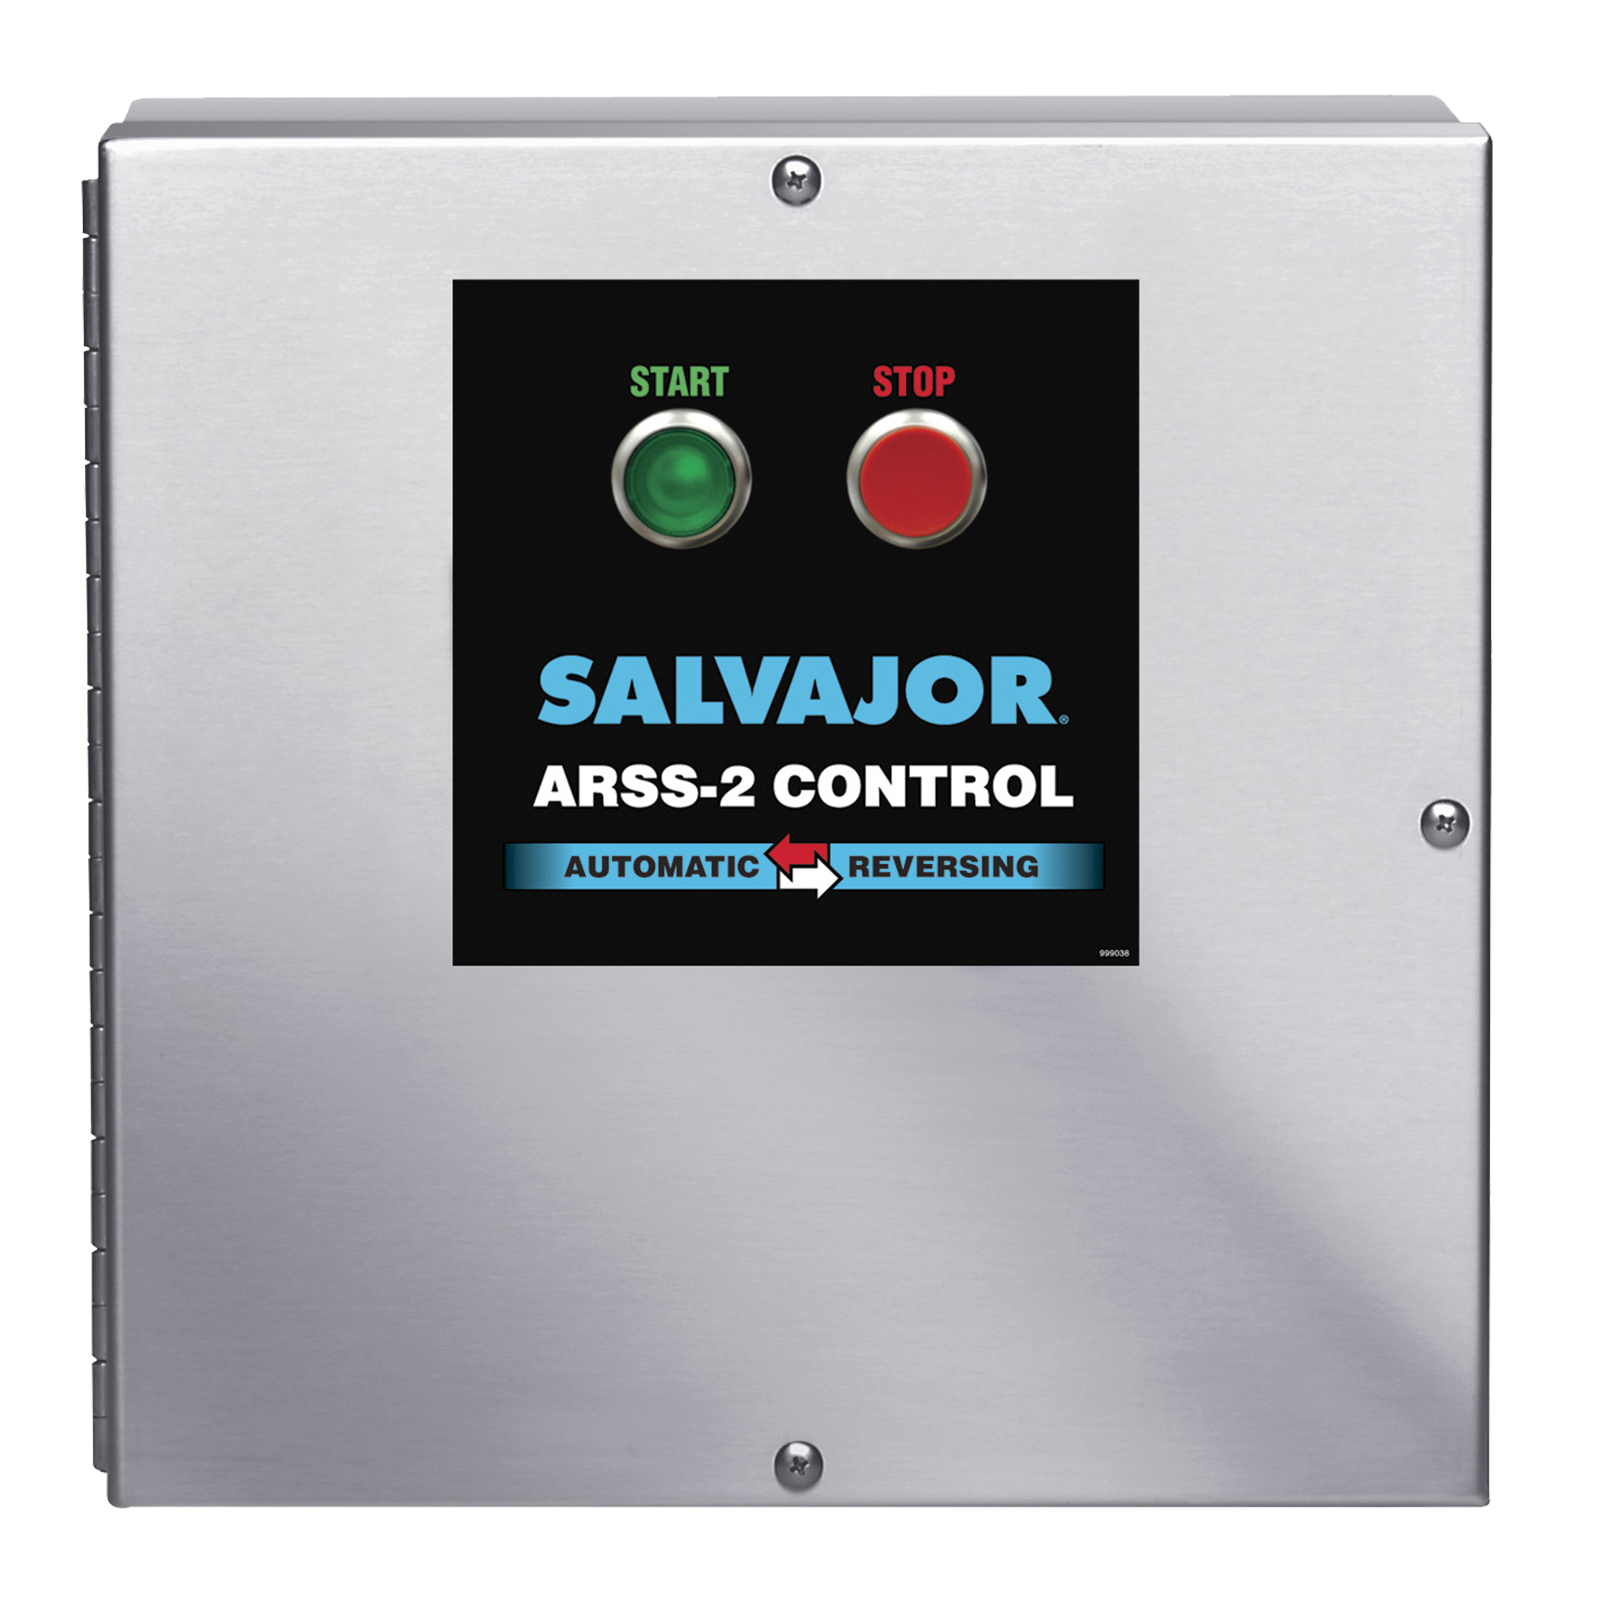 Salvajor ARSS-2 Disposer Control Panel